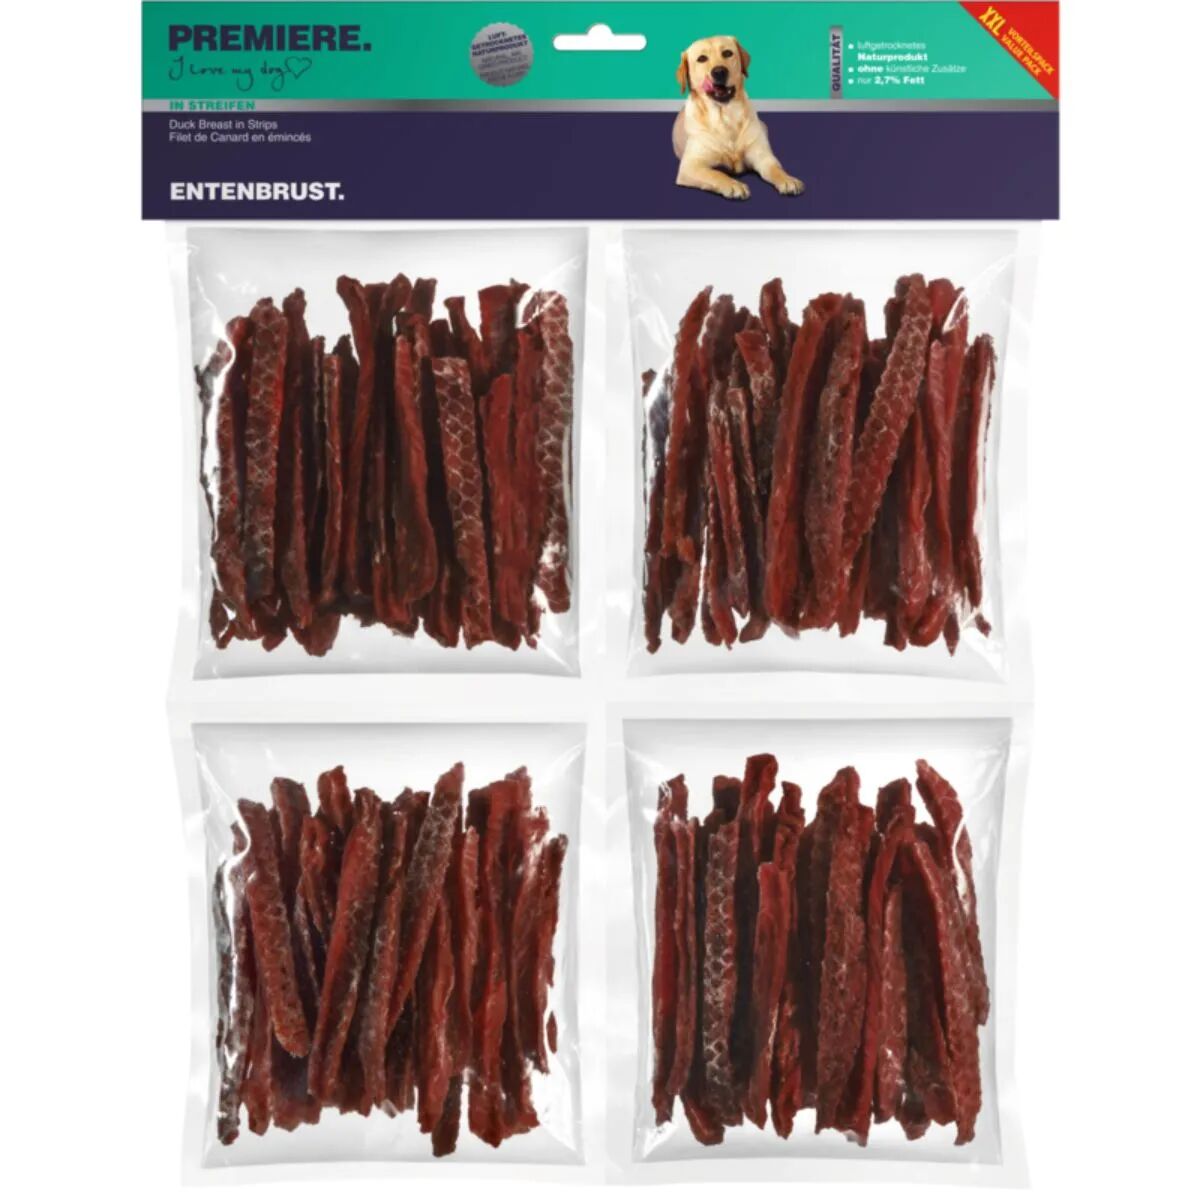 PREMIERE Snack Dog Snack It Strips 250GX4 ANATRA